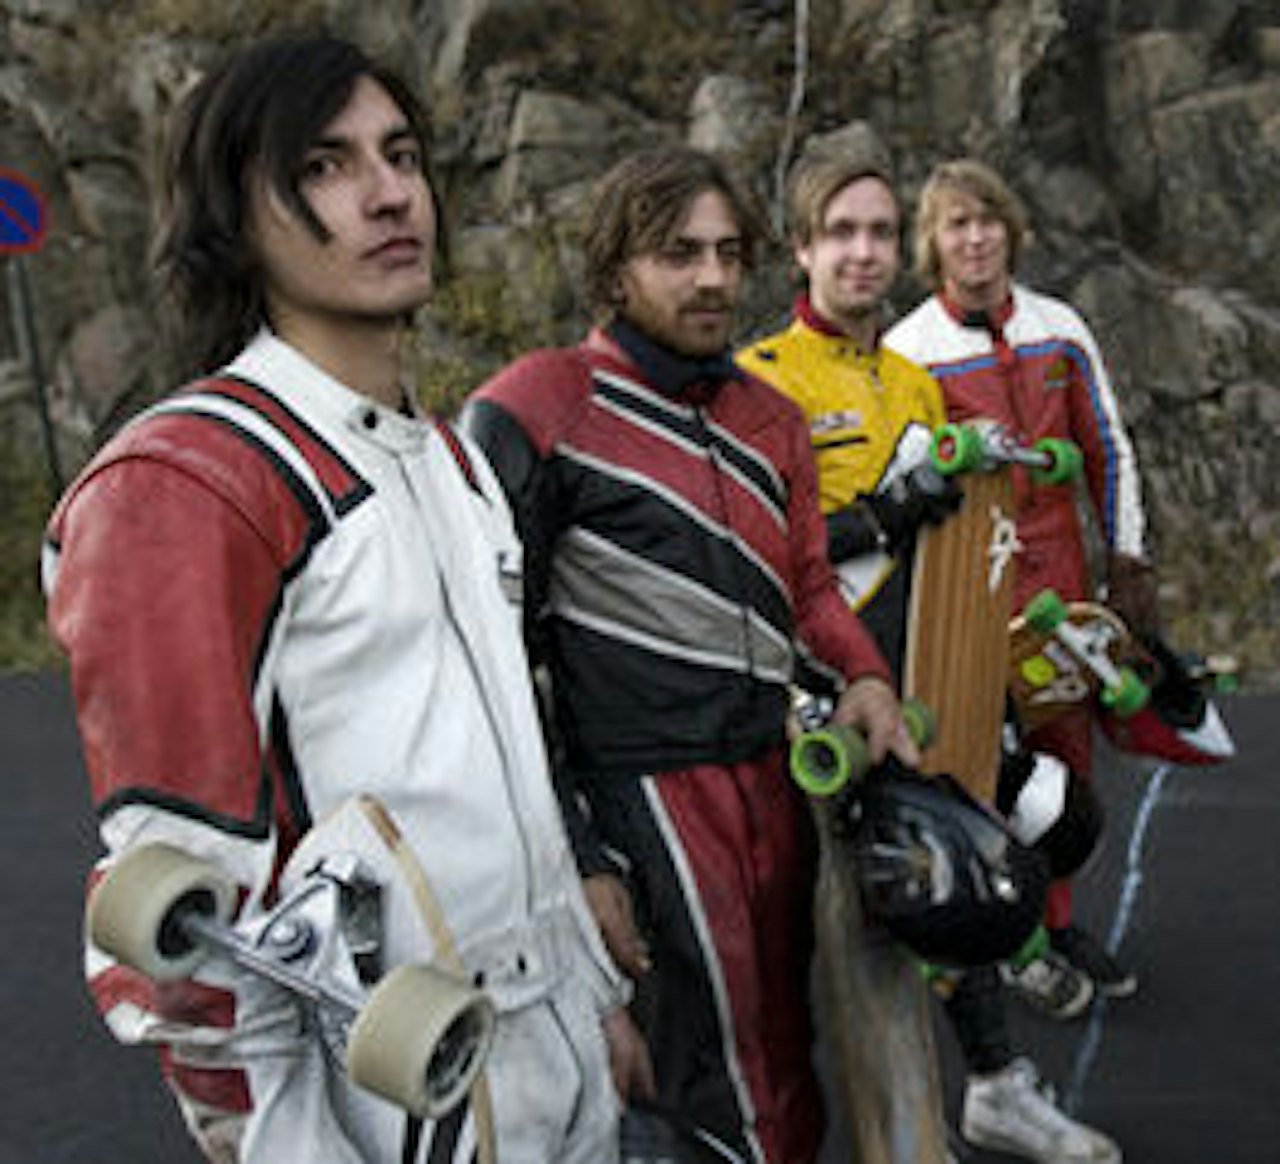 Finalistene fra venstre: Daniel, Fredric , Andy og Sanne. Foto: HP Hval